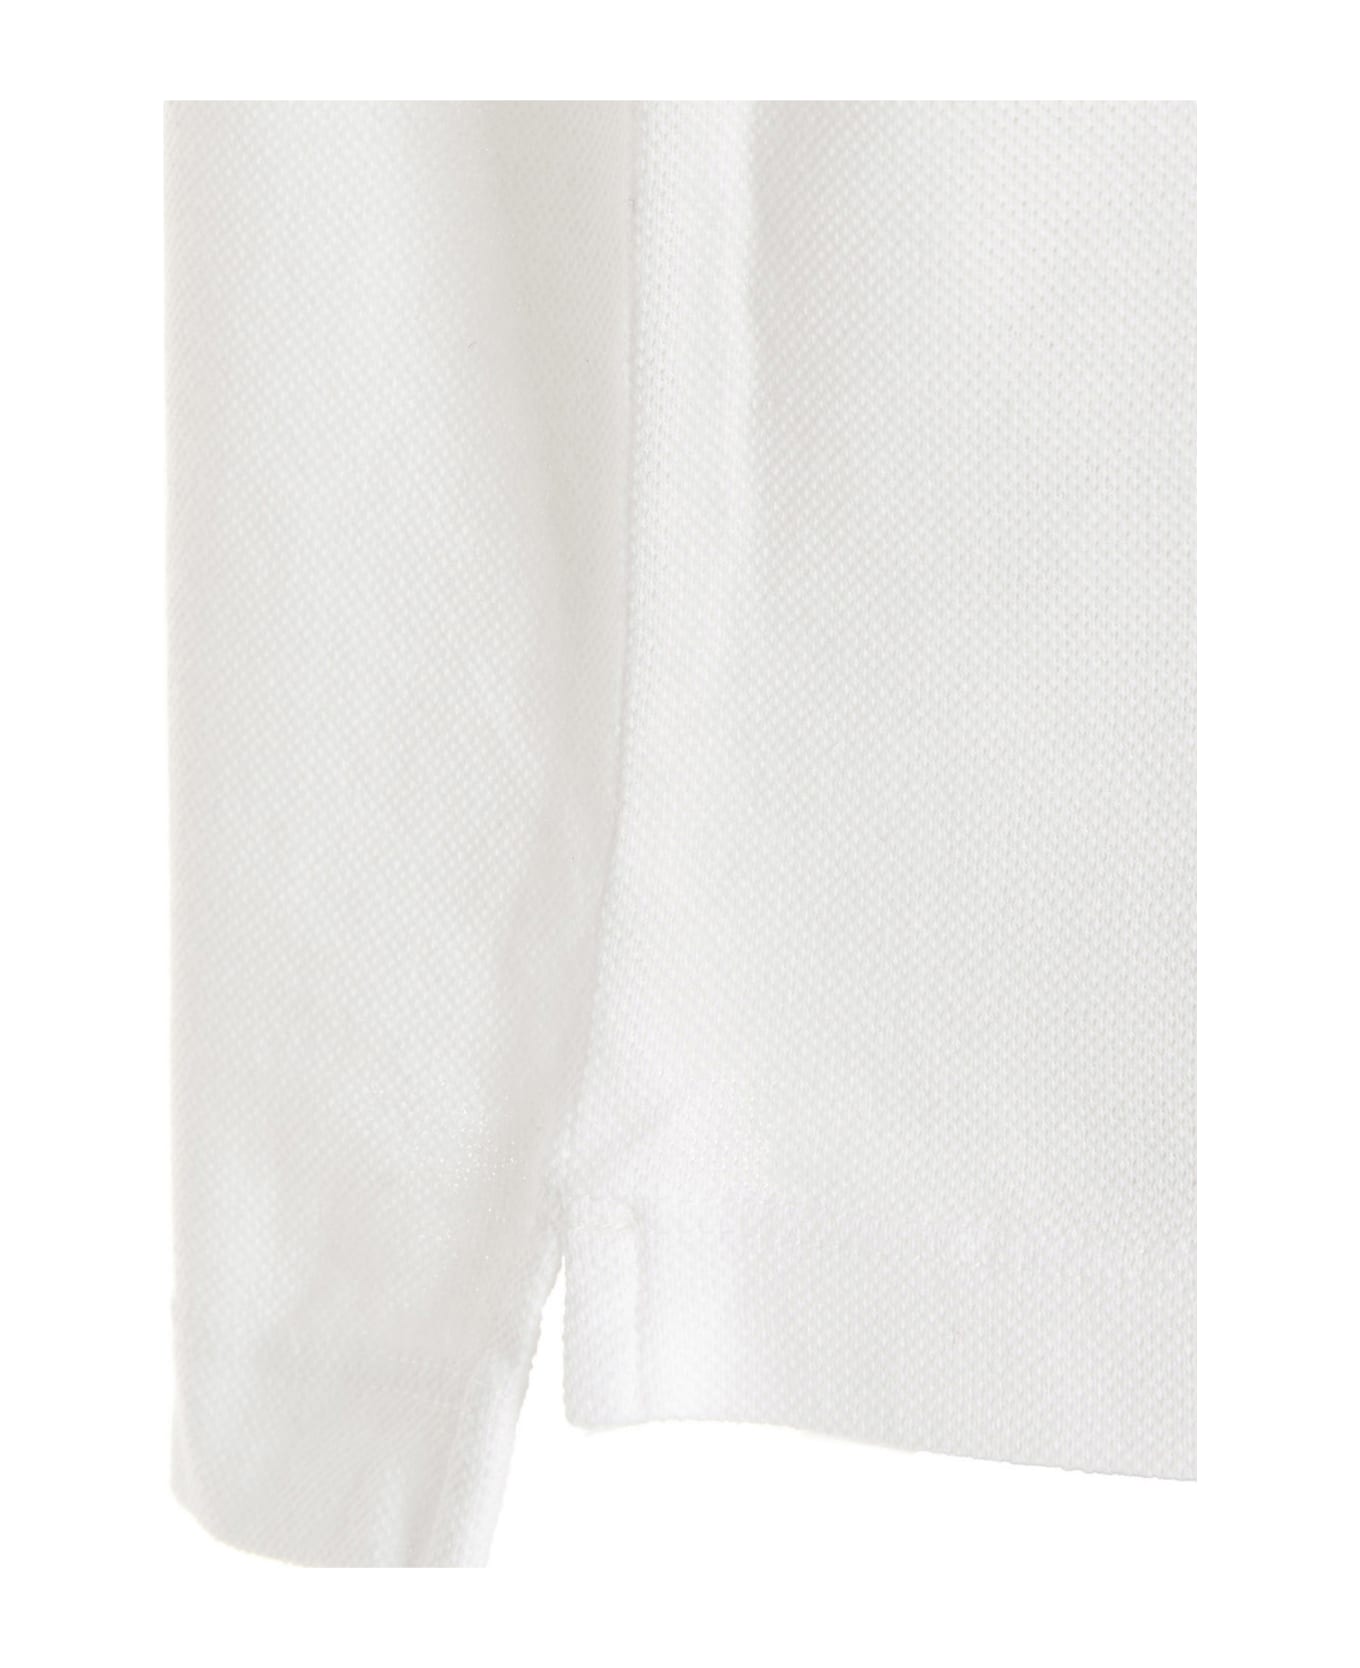 Dsquared2 'icon  Polo Shirt - White